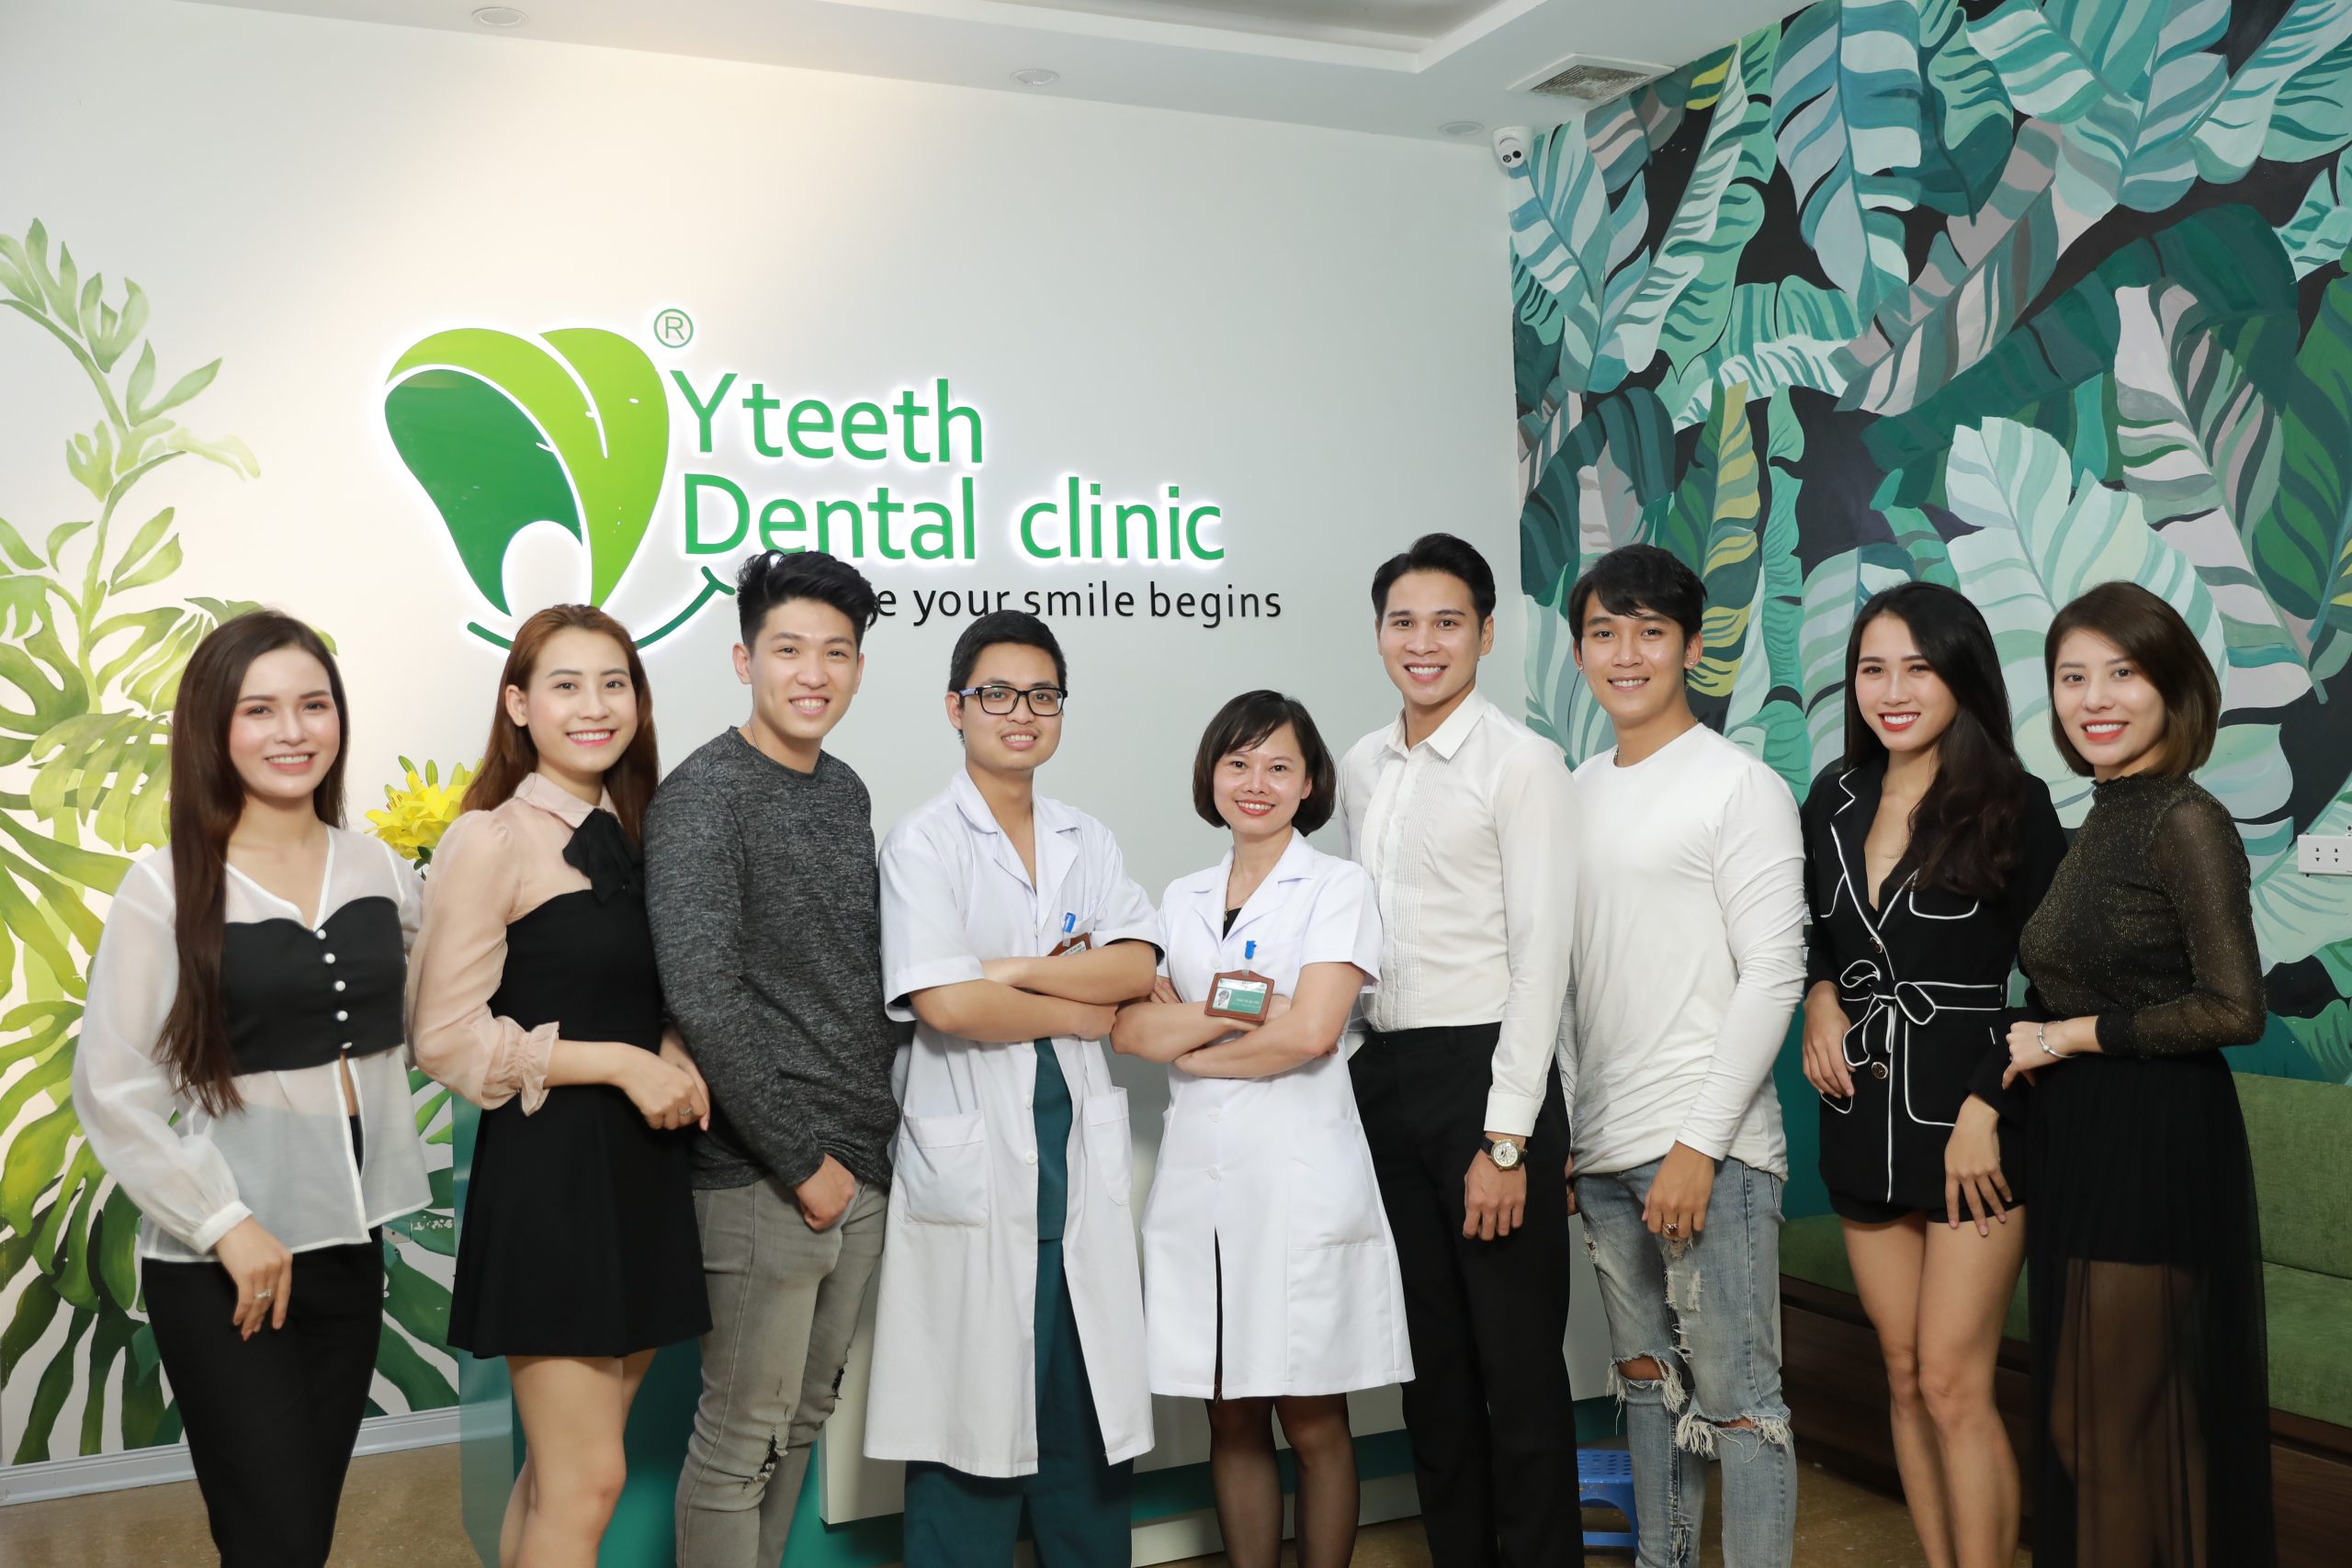 Dr. Hải Yến Yteeth tại Nha khoa Yteeth